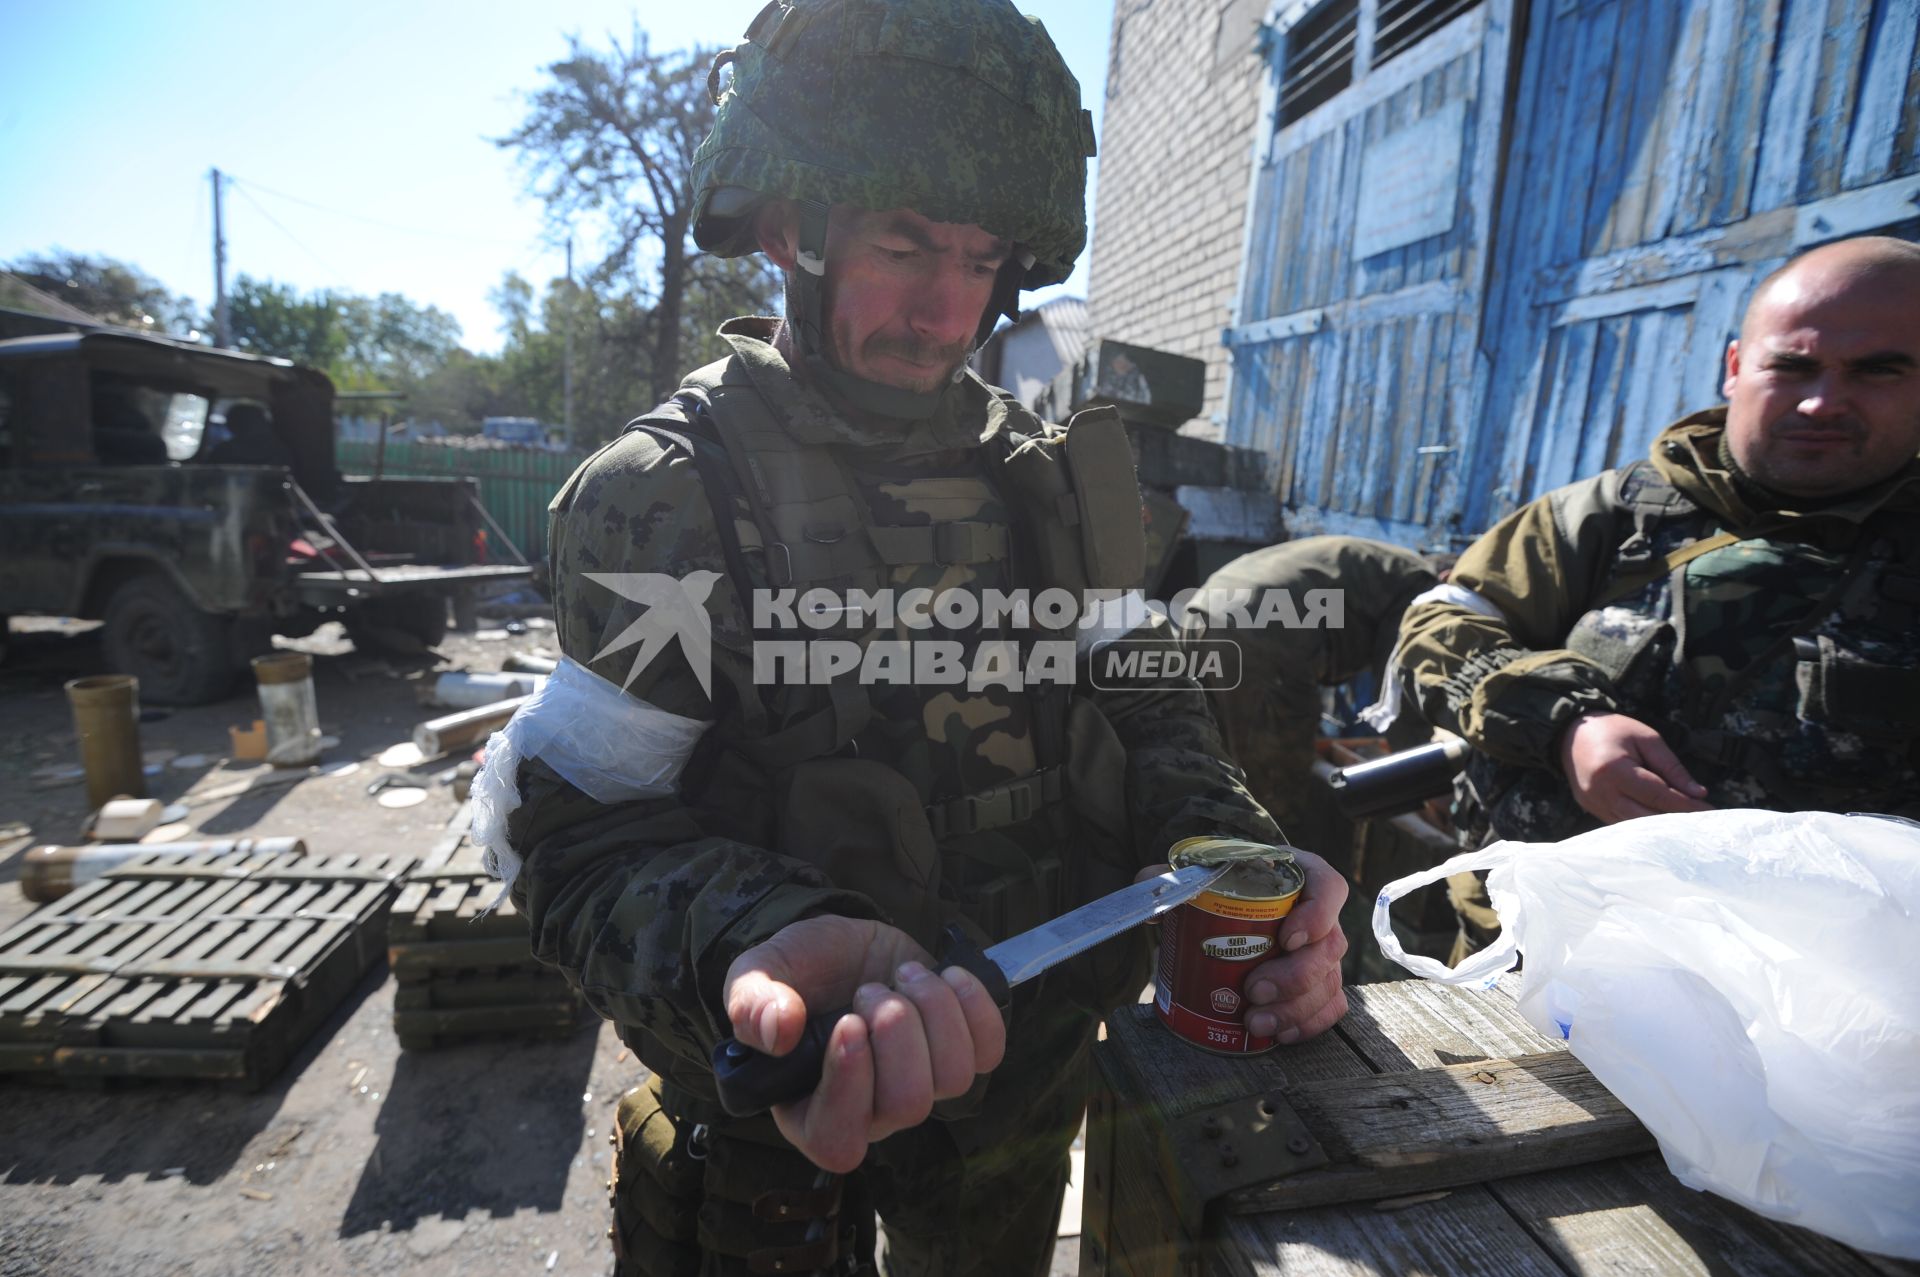 Донецк. Ополченцы ДНР штурмуют аэропорт, где находятся украинские войска. На снимке: ополченец открывает банку тушенки.